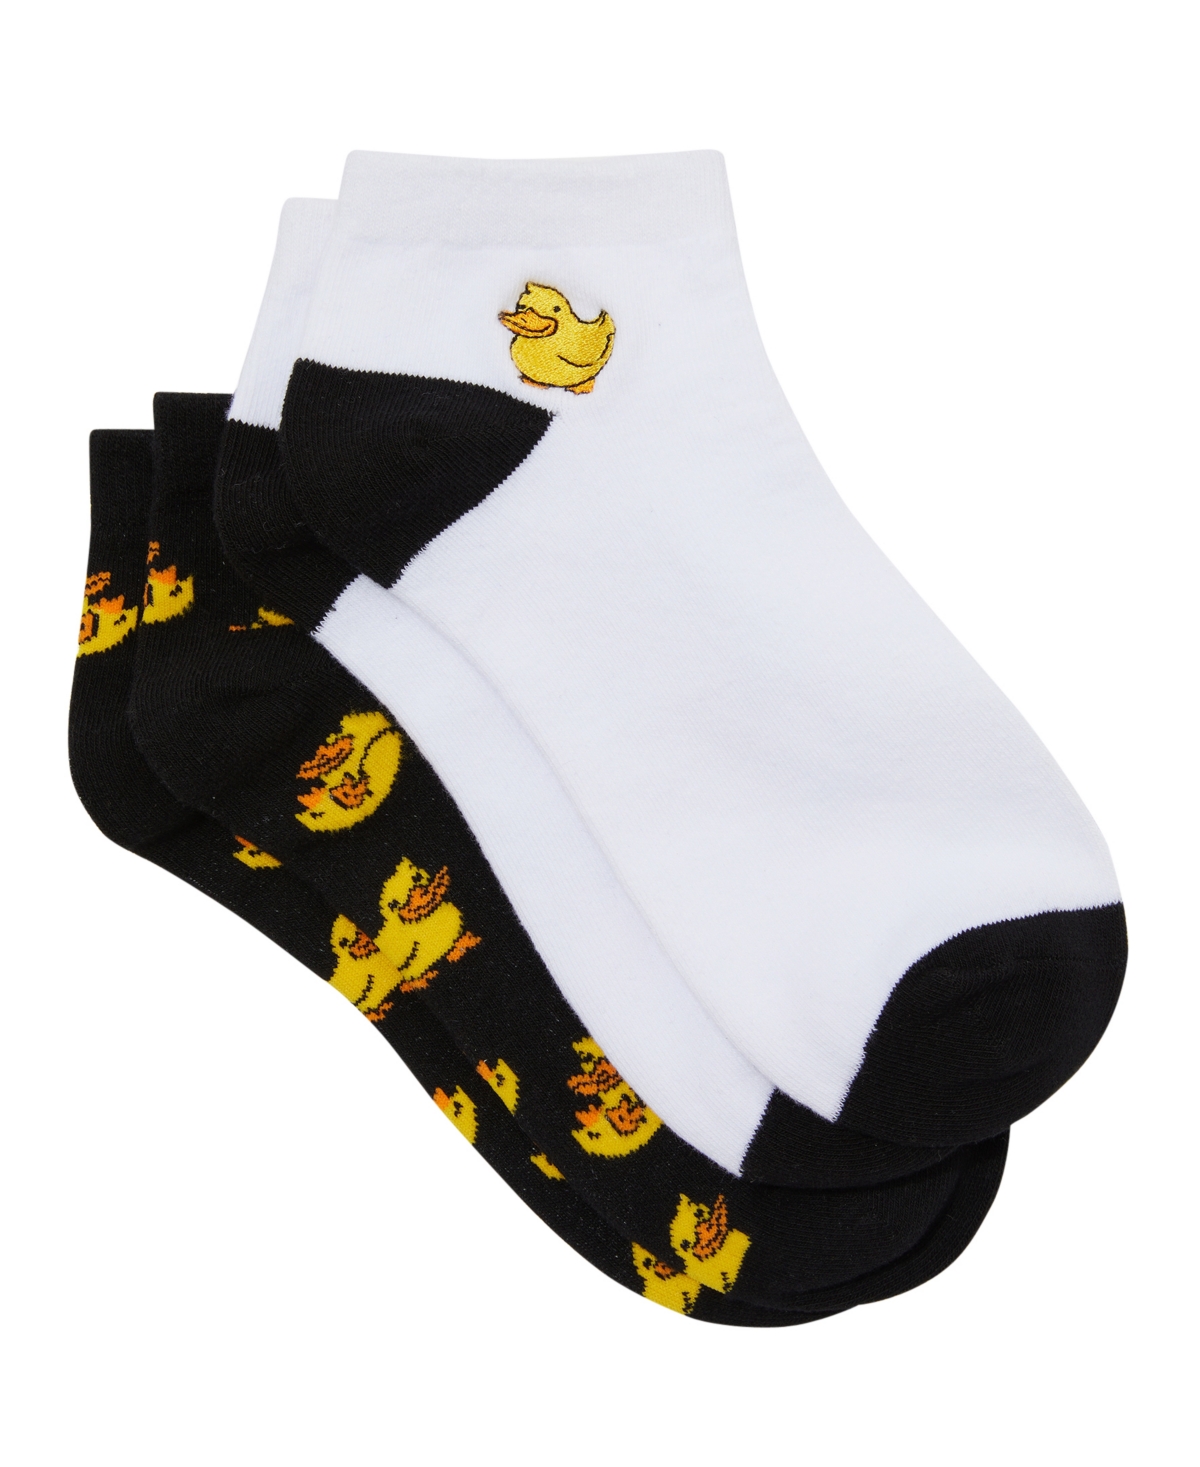 Cotton On Men's Print Ankle Socks, Pack Of 2 In Ducks